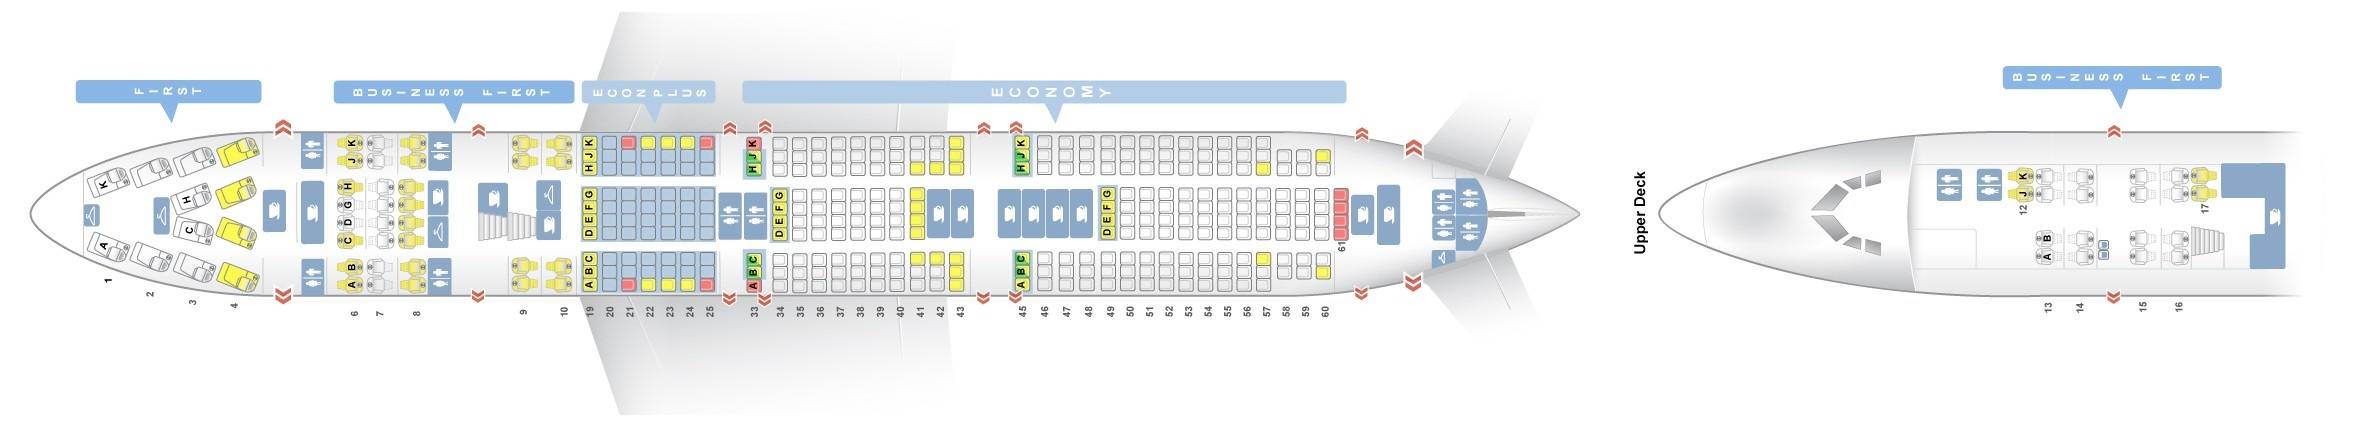 Схема салона и лучшие места boeing 747-400 аэрофлот | авиакомпании и авиалинии россии и мира